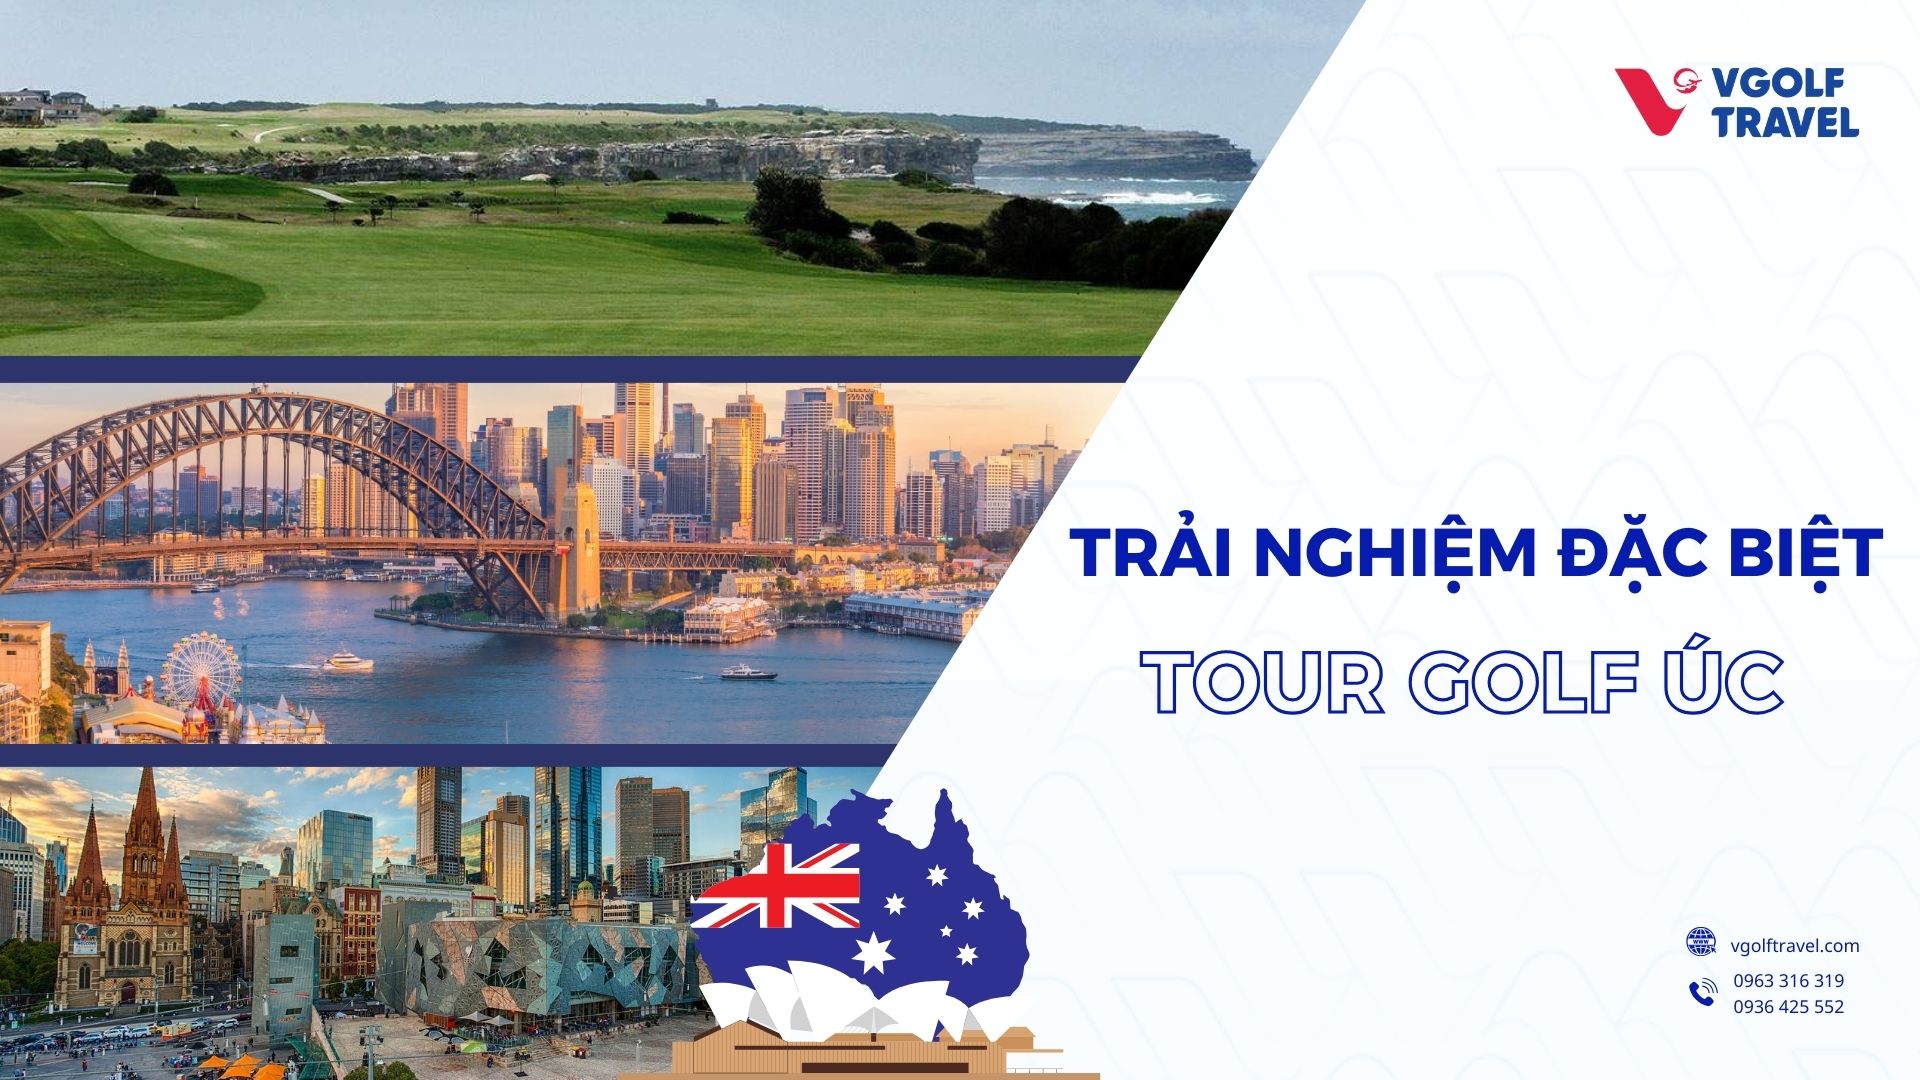 Những trải nghiệm đặc biệt của golfer trong tour golf Úc: Sydney - Melbourne